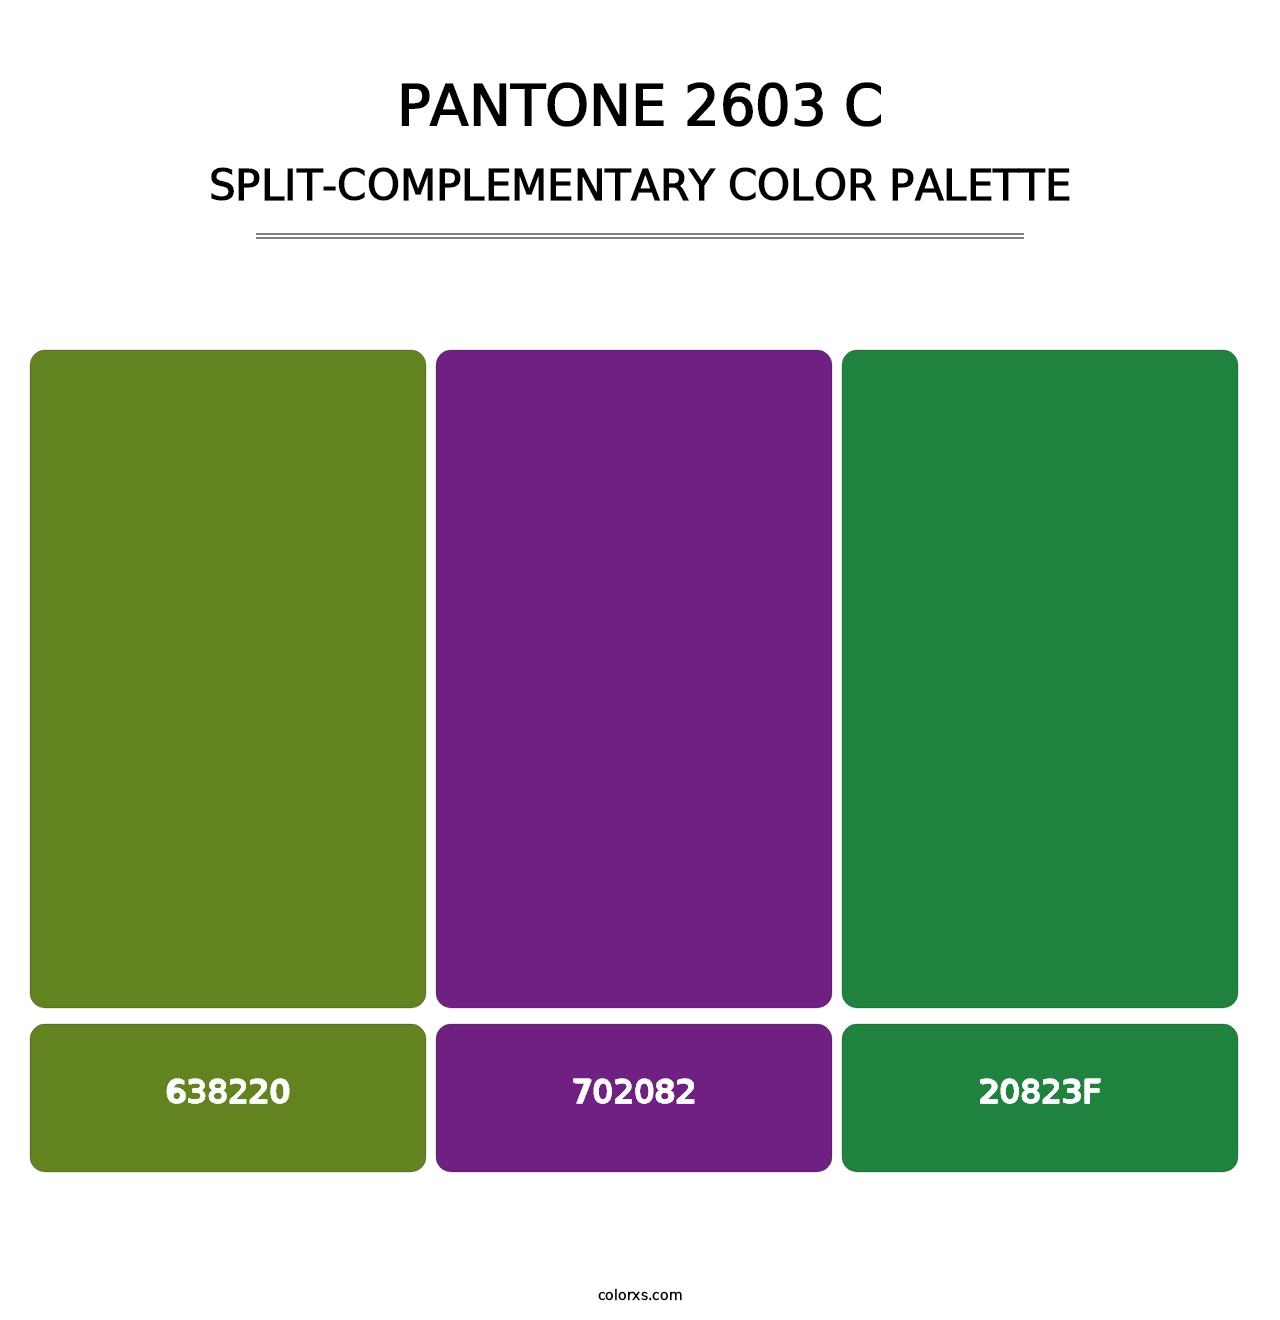 PANTONE 2603 C - Split-Complementary Color Palette